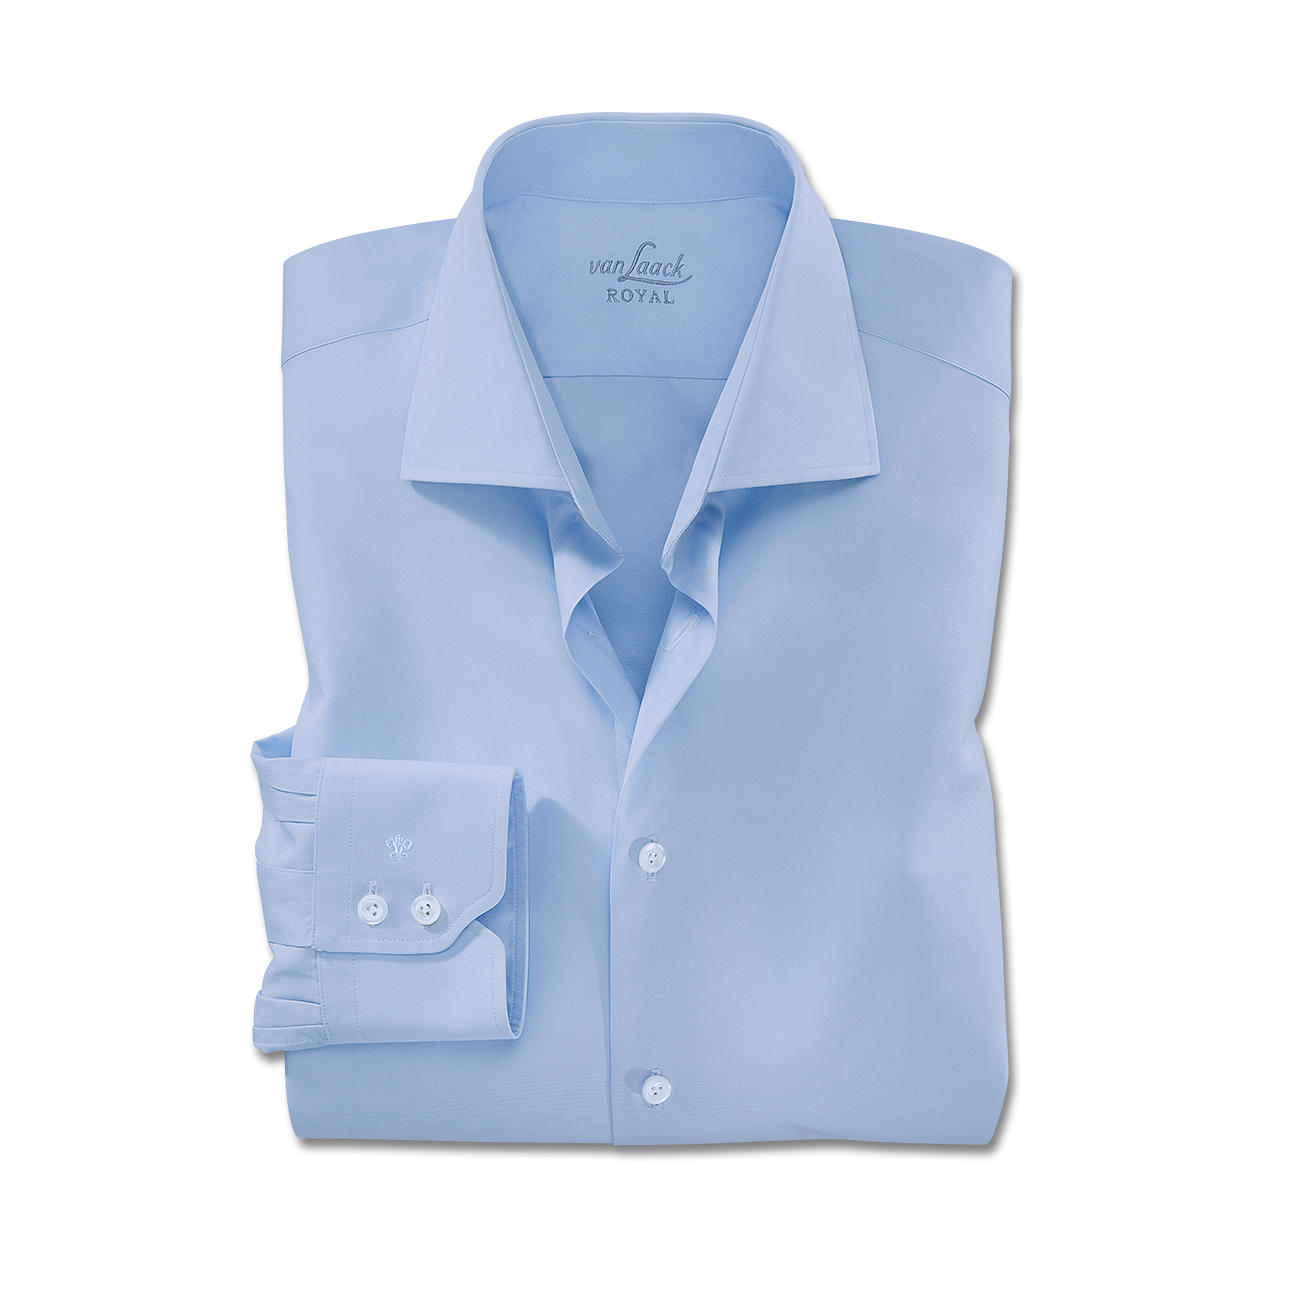 Van Laack Shirts single button cuffs, light blue OBZVDGC